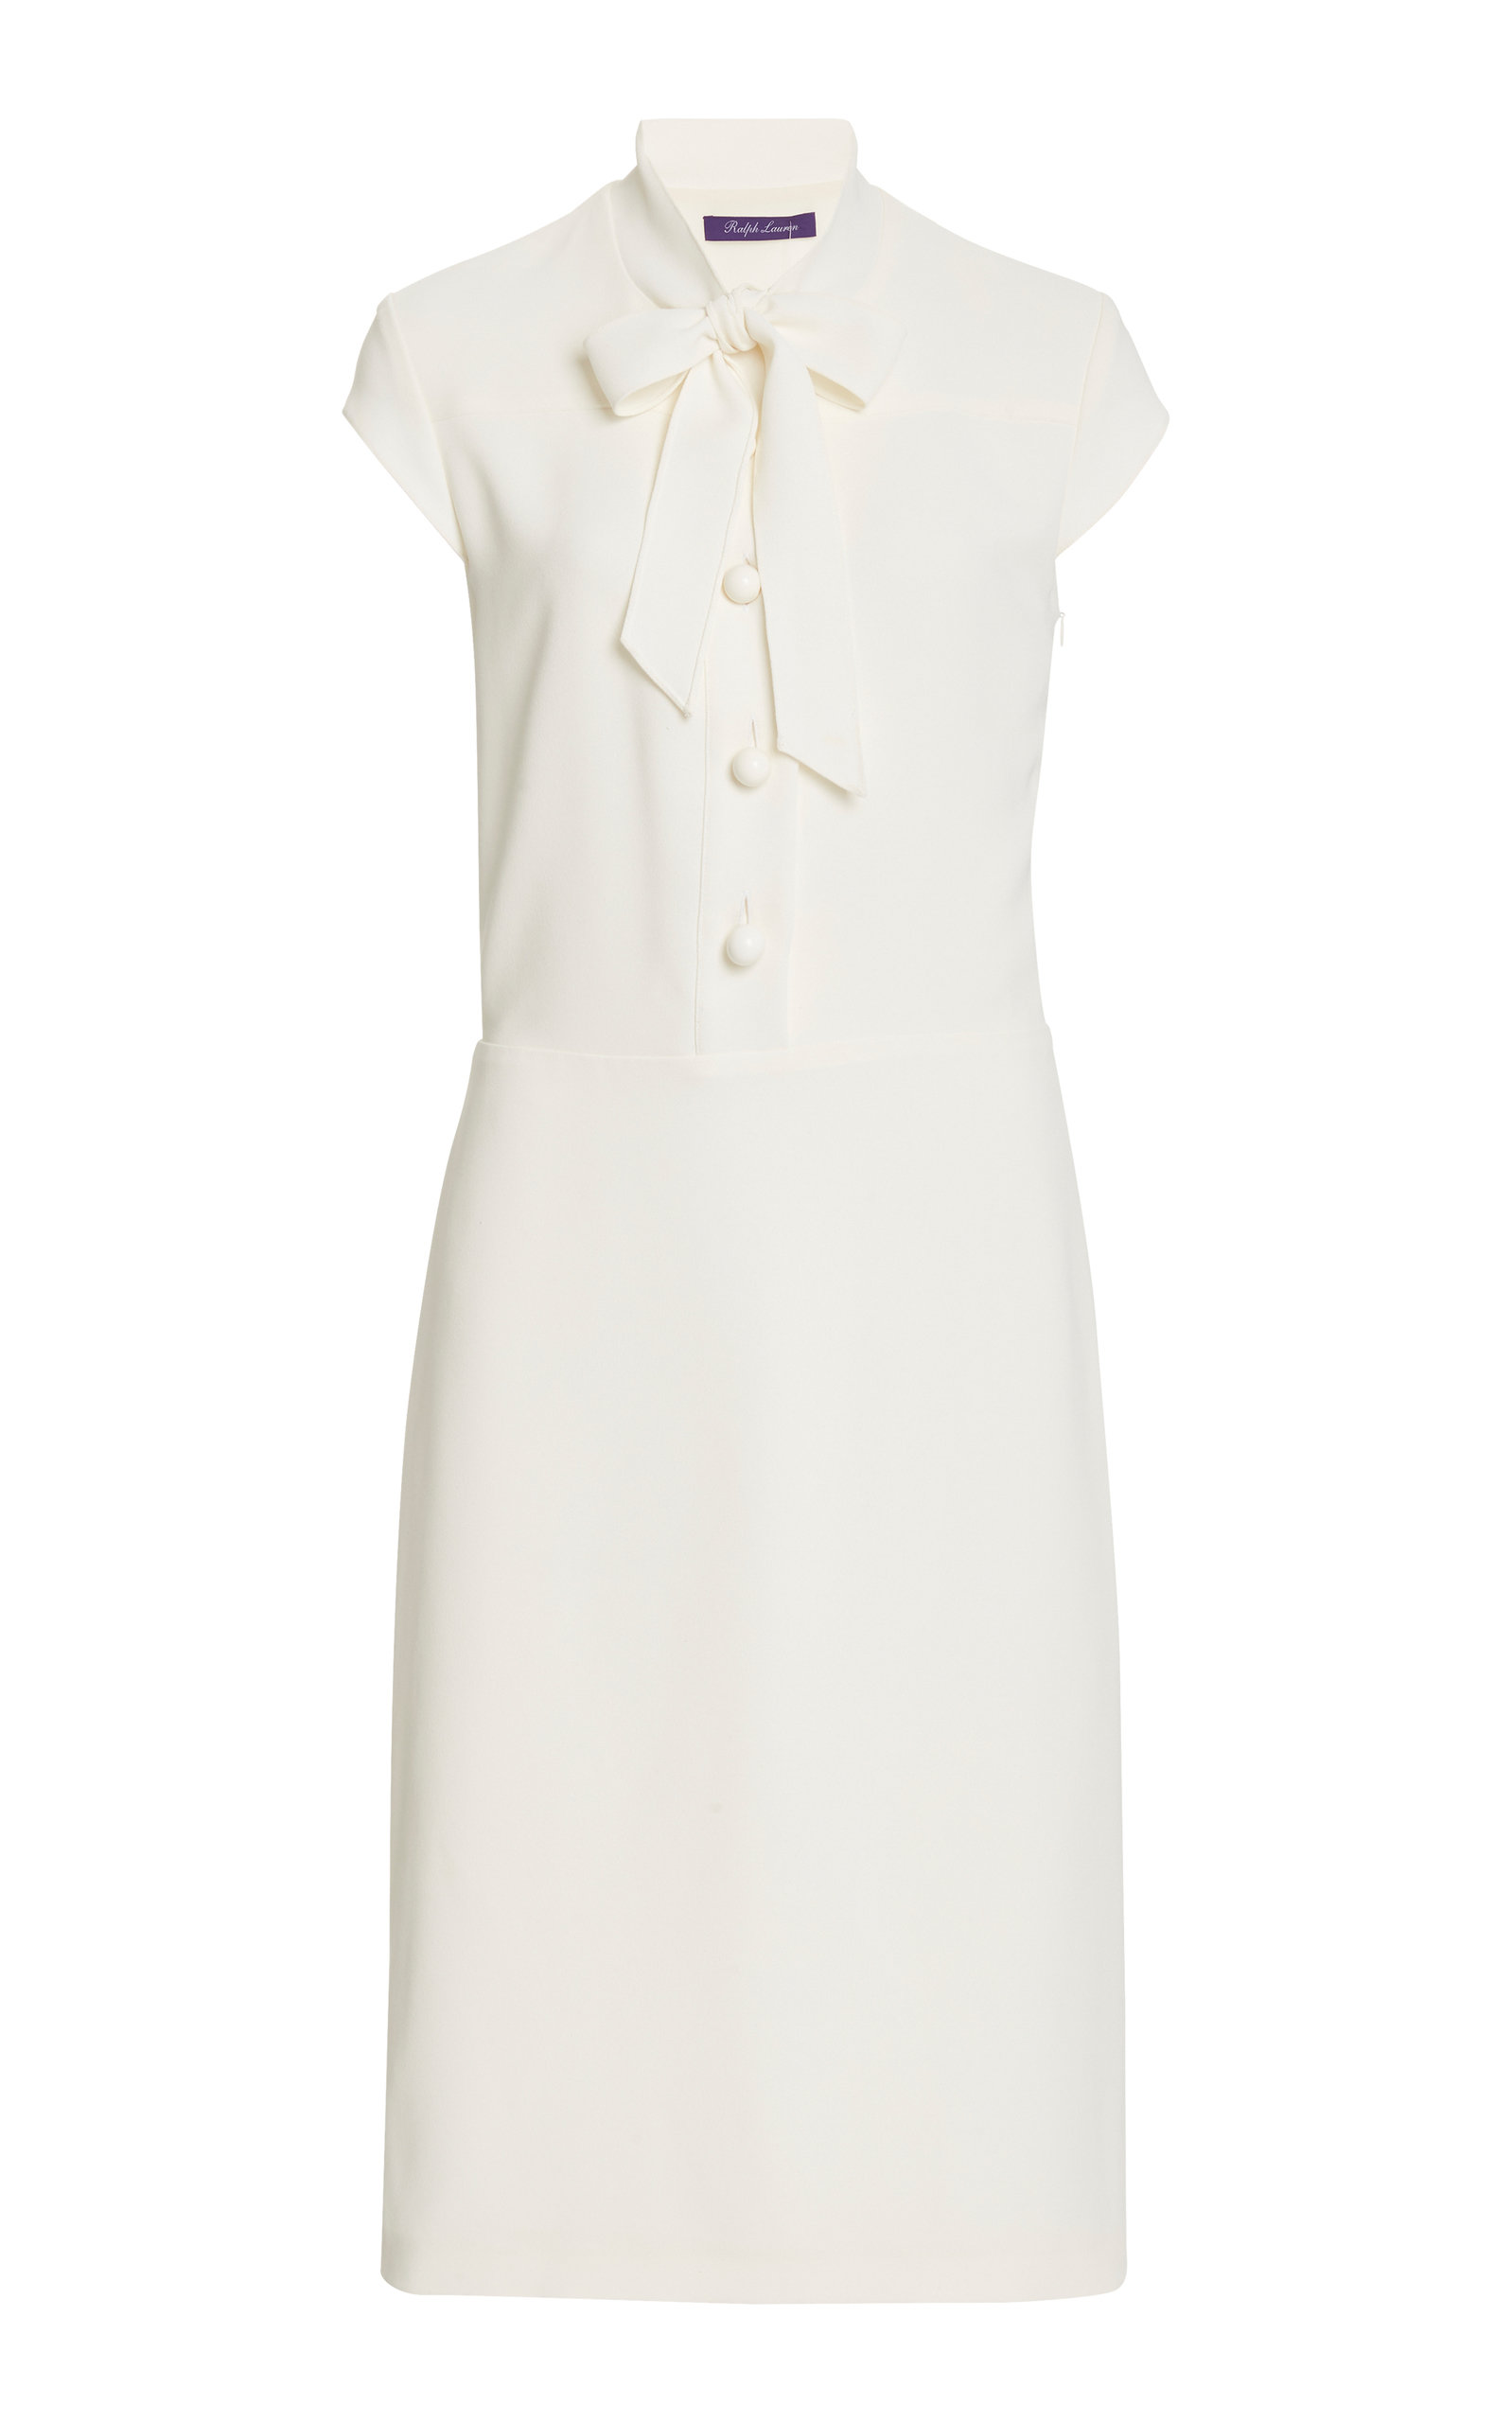 ralph lauren white long dress